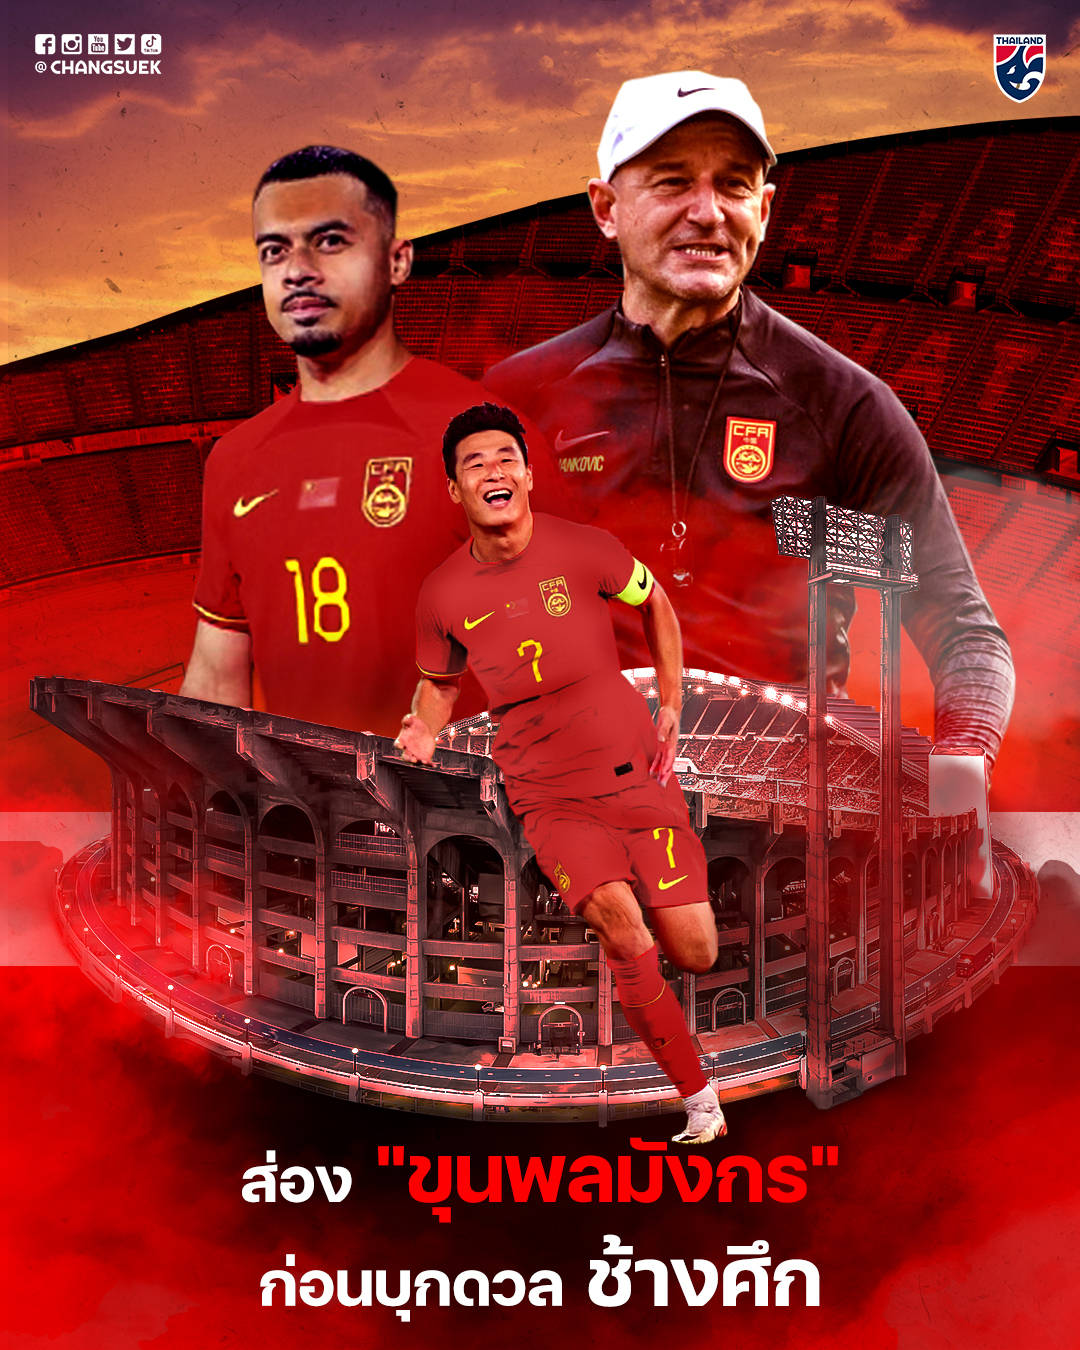 武磊李可登上泰国官方海报:中国队没有非血缘归化球员